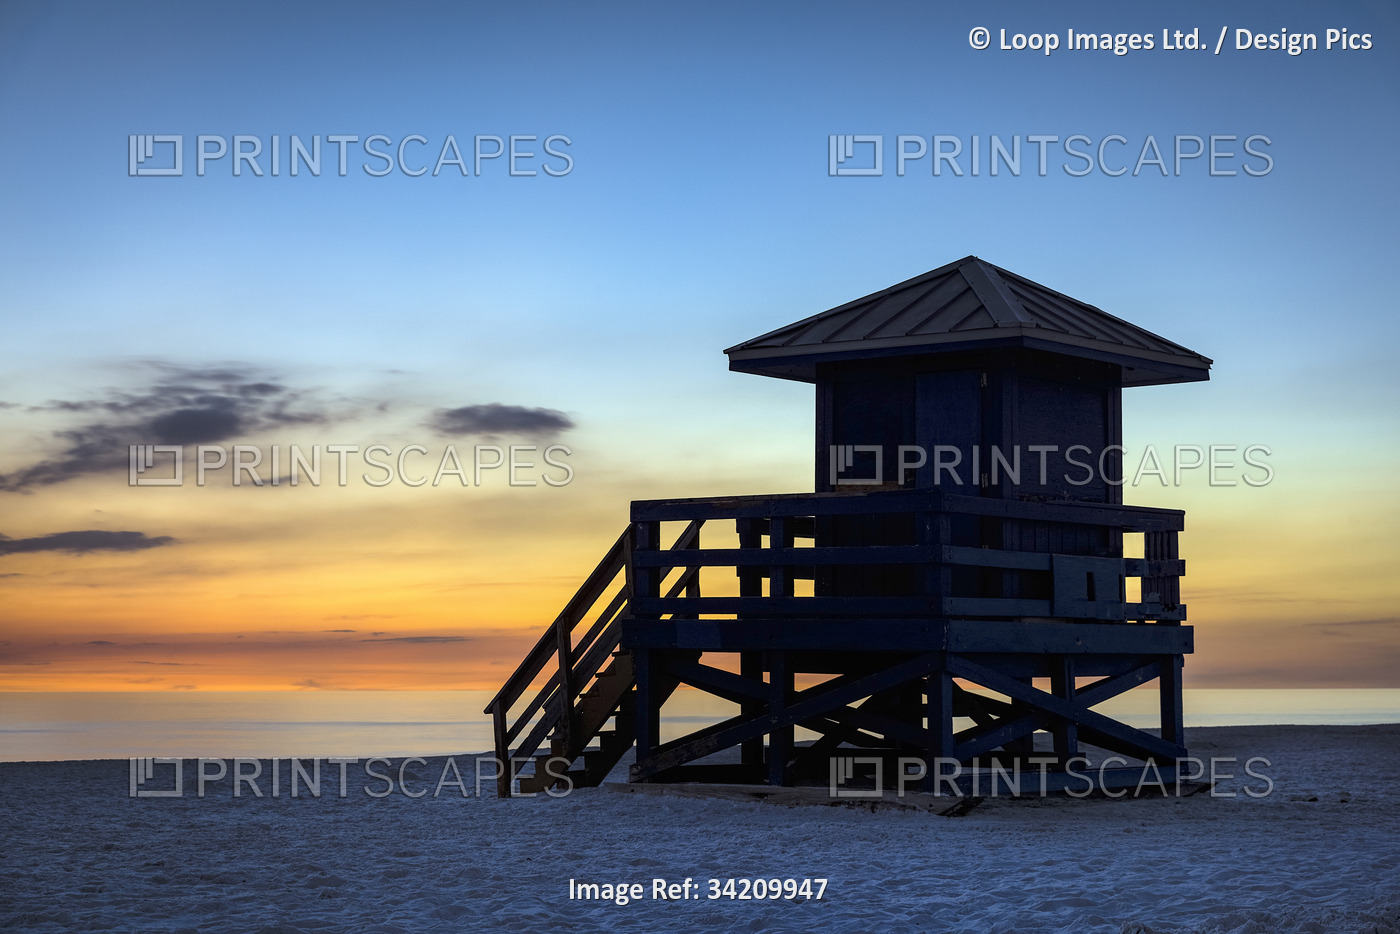 Lifeguard shack at sunset at Siesta Key Beach in Florida.